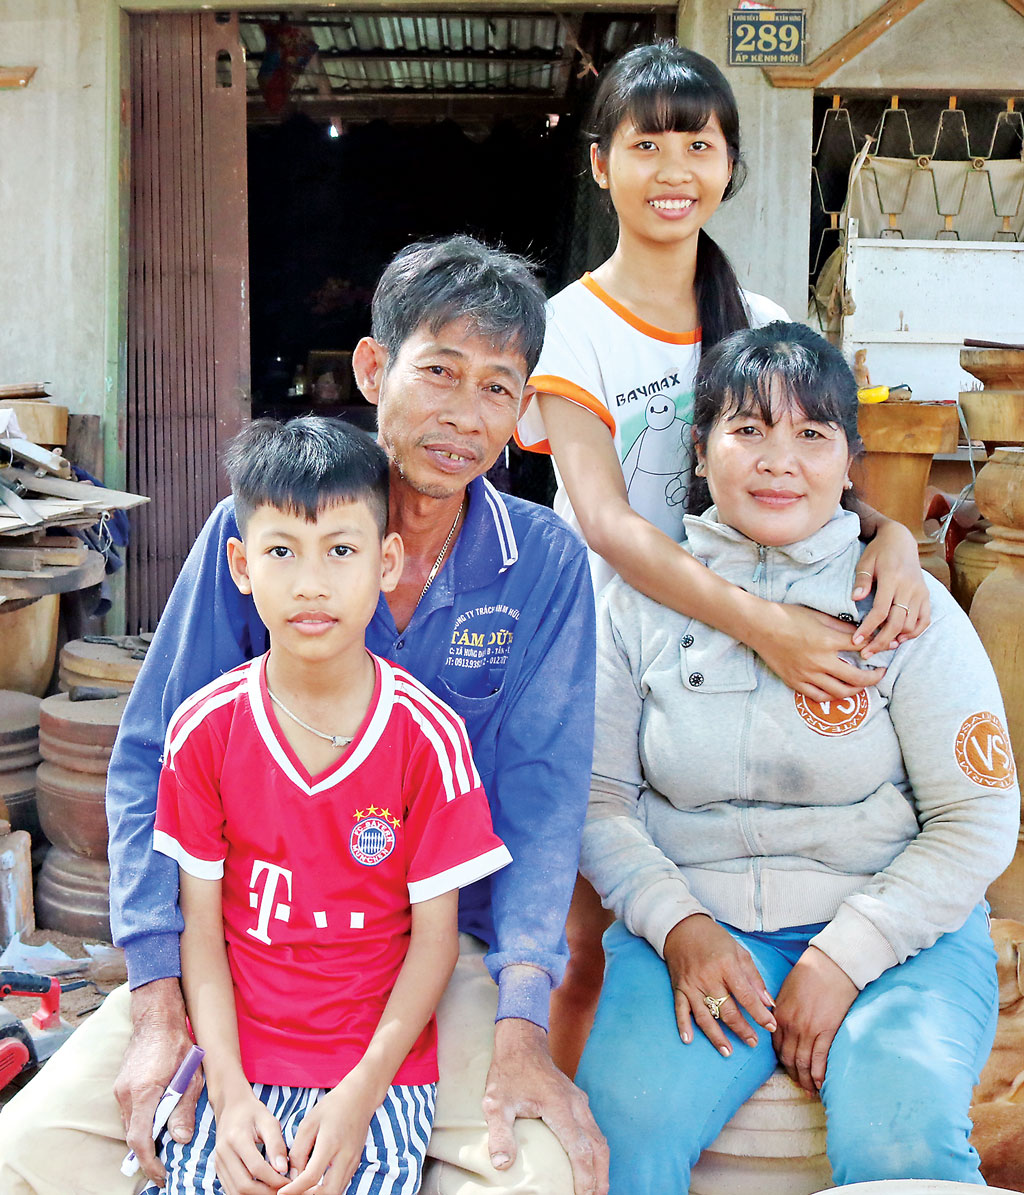 Dù bận rộn với công việc nhưng anh Lê Văn Hoài và chị Yin Va Ri luôn dành thời gian chia sẻ với nhau mọi vui, buồn trong cuộc sống và nuôi dạy các con nên người